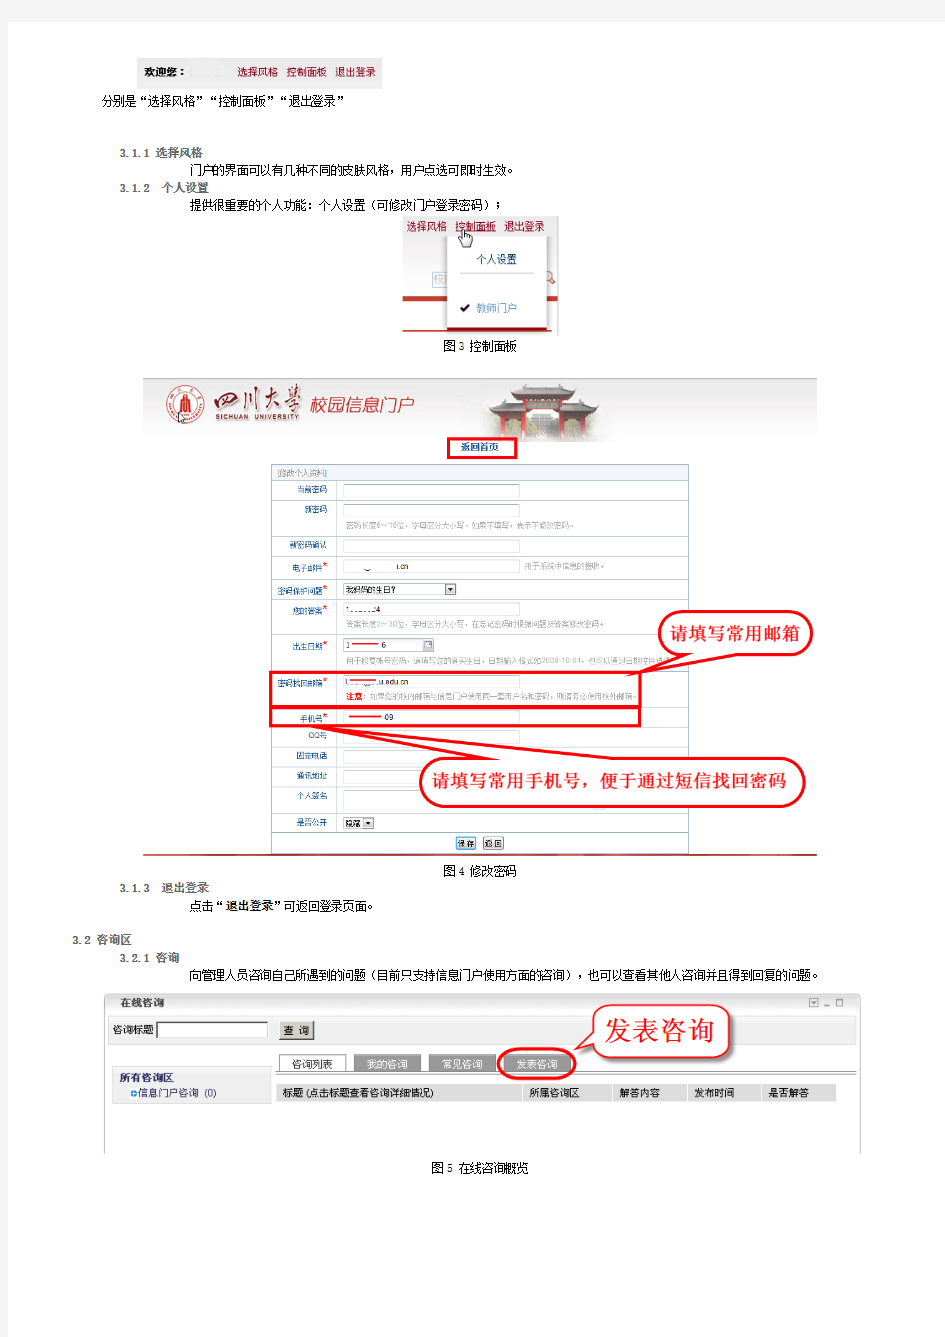 四川大学信息门户帮助手册